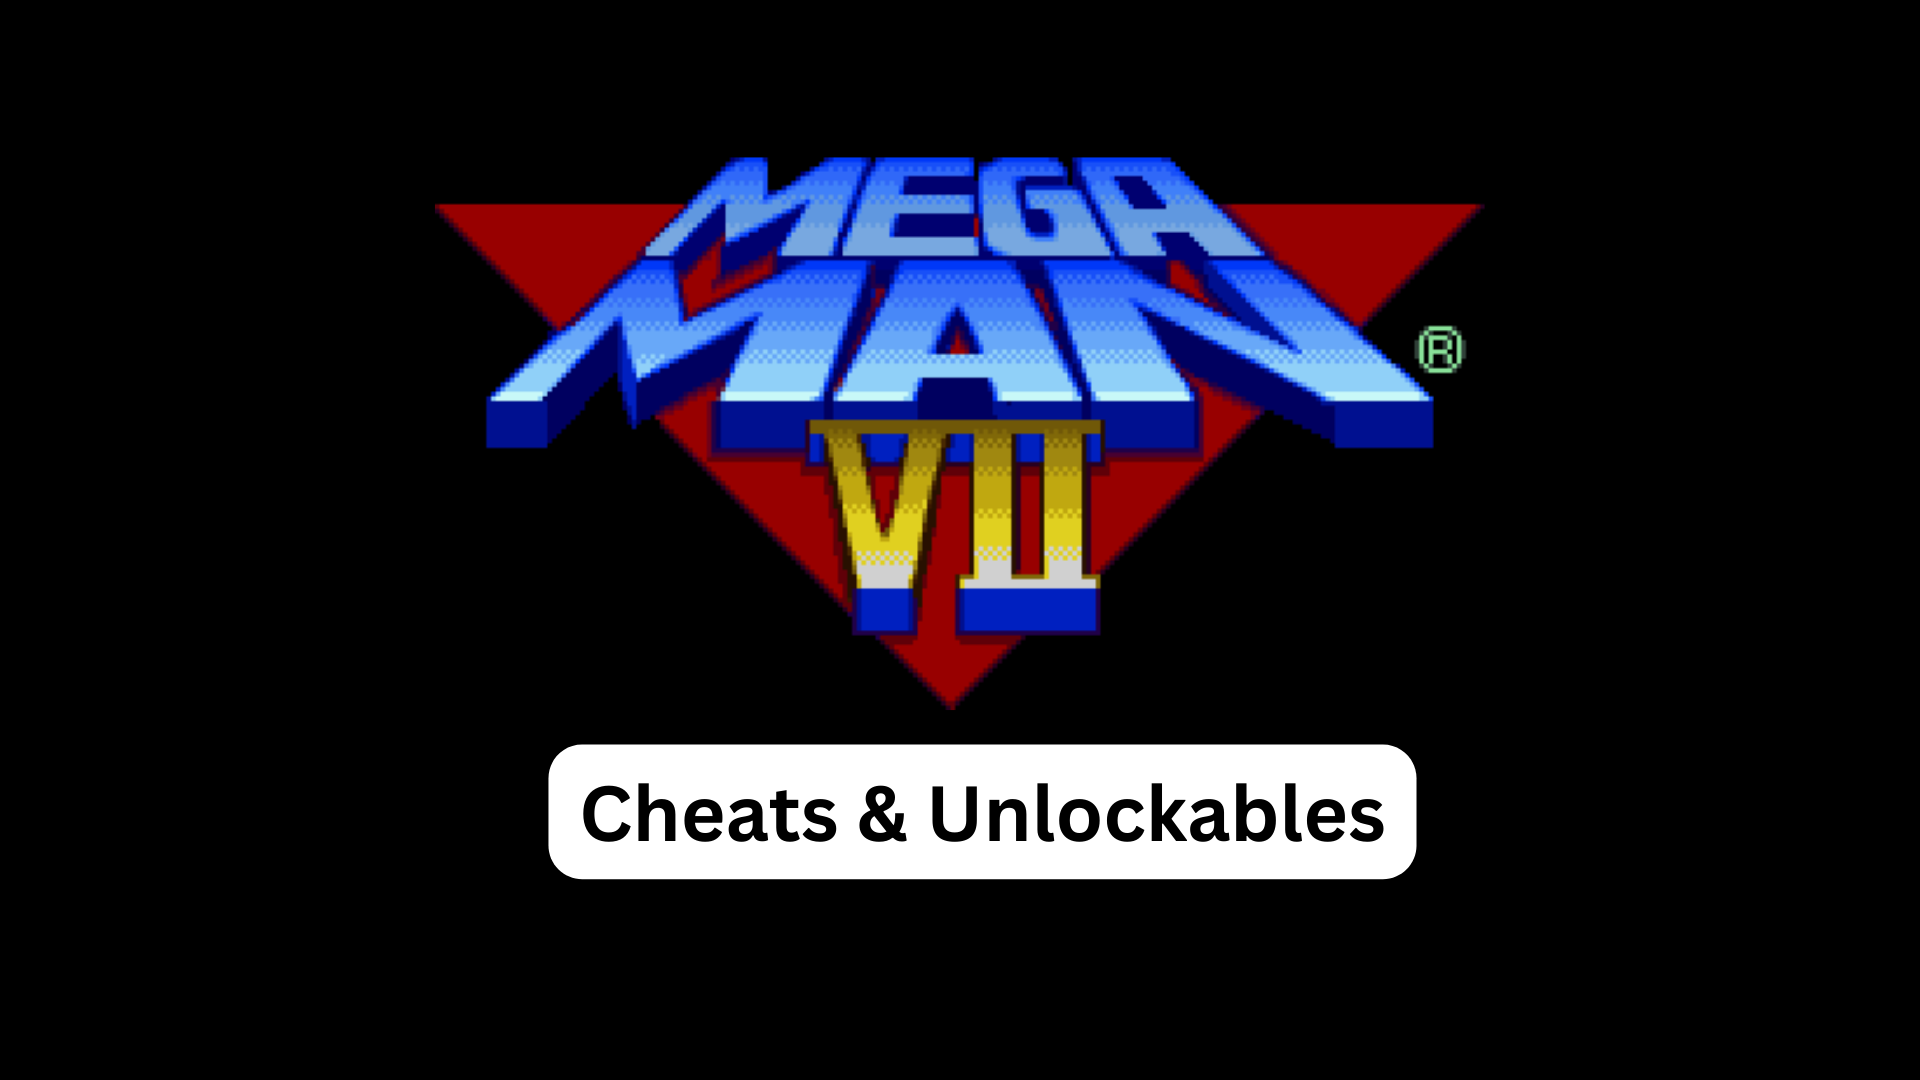 mega man 7 cheats and unlockables